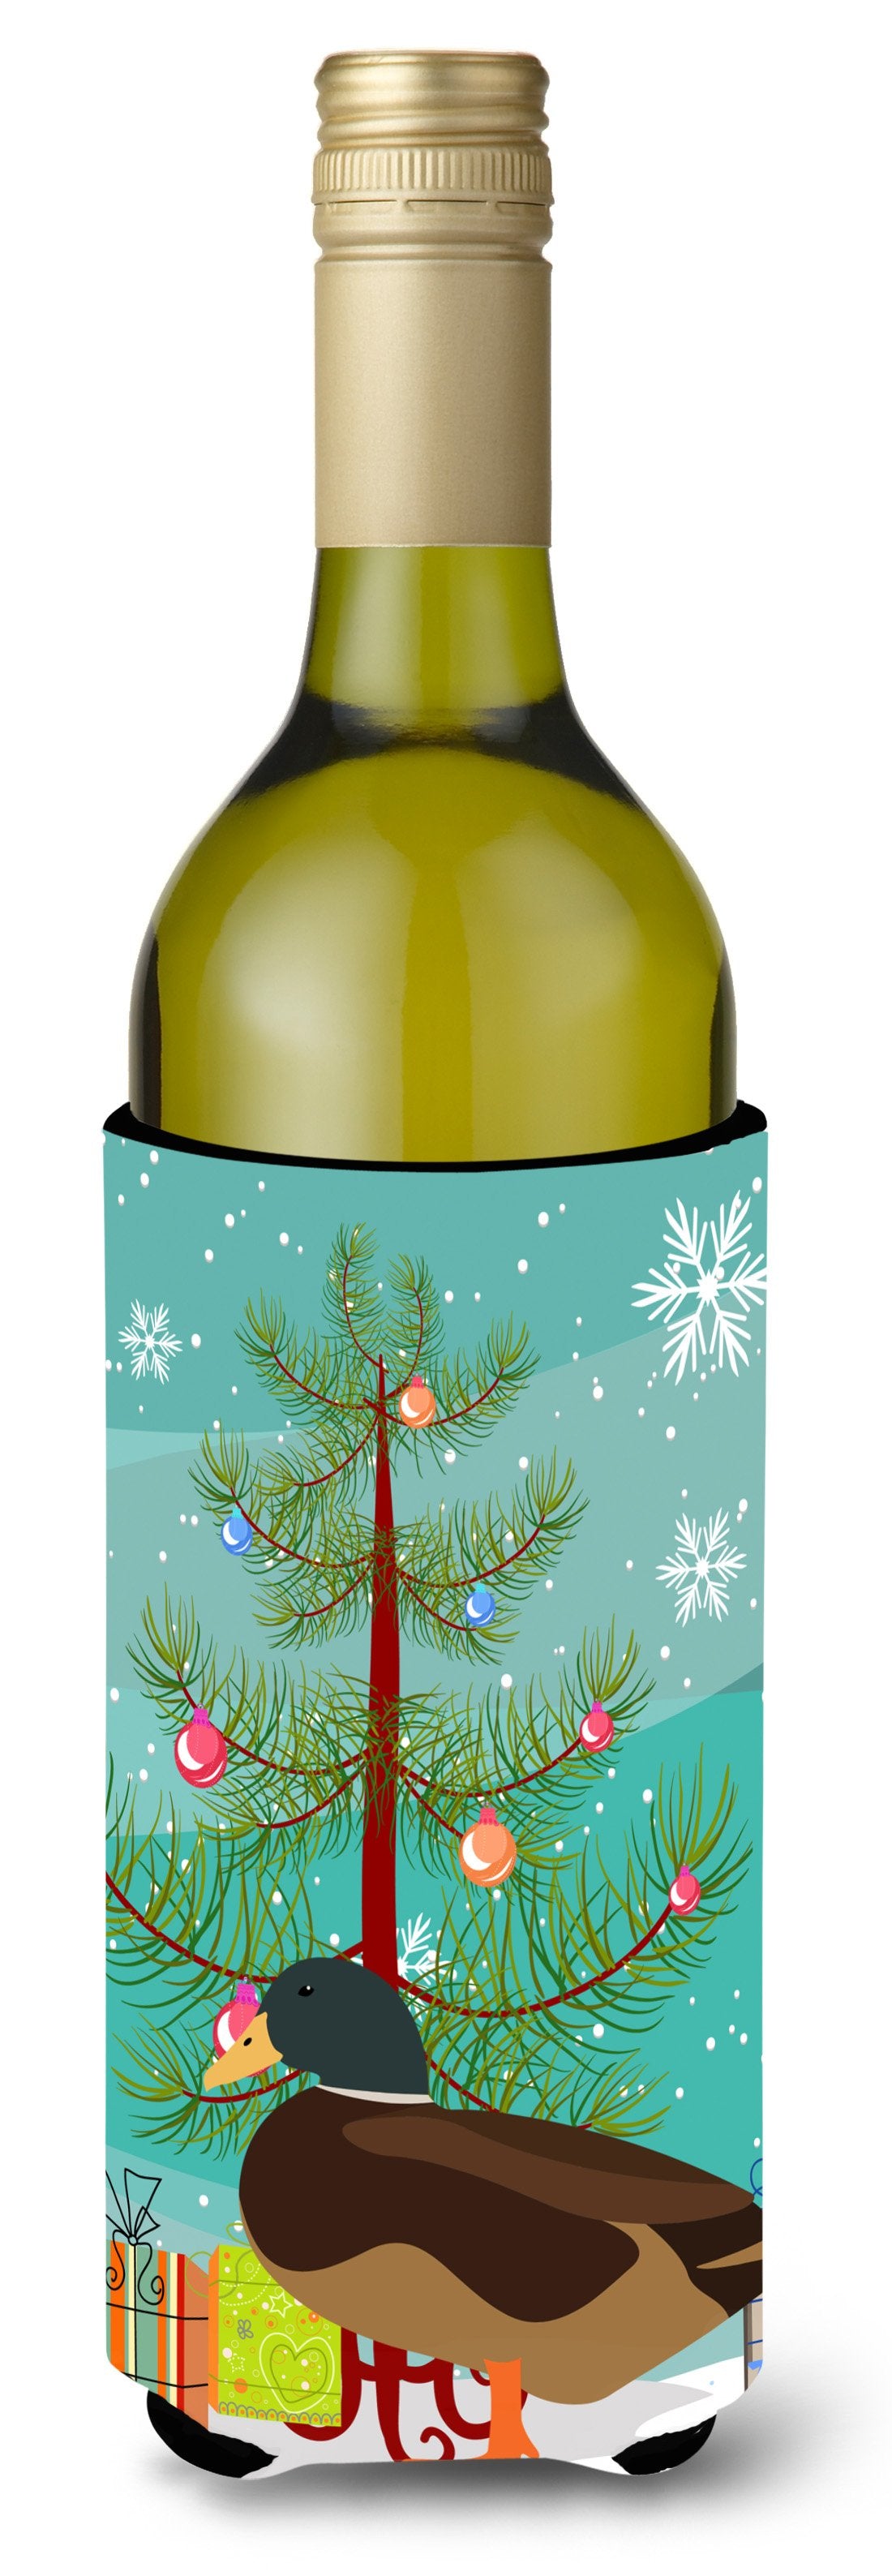 Silver Bantam Duck Christmas Wine Bottle Beverge Insulator Hugger BB9234LITERK by Caroline's Treasures